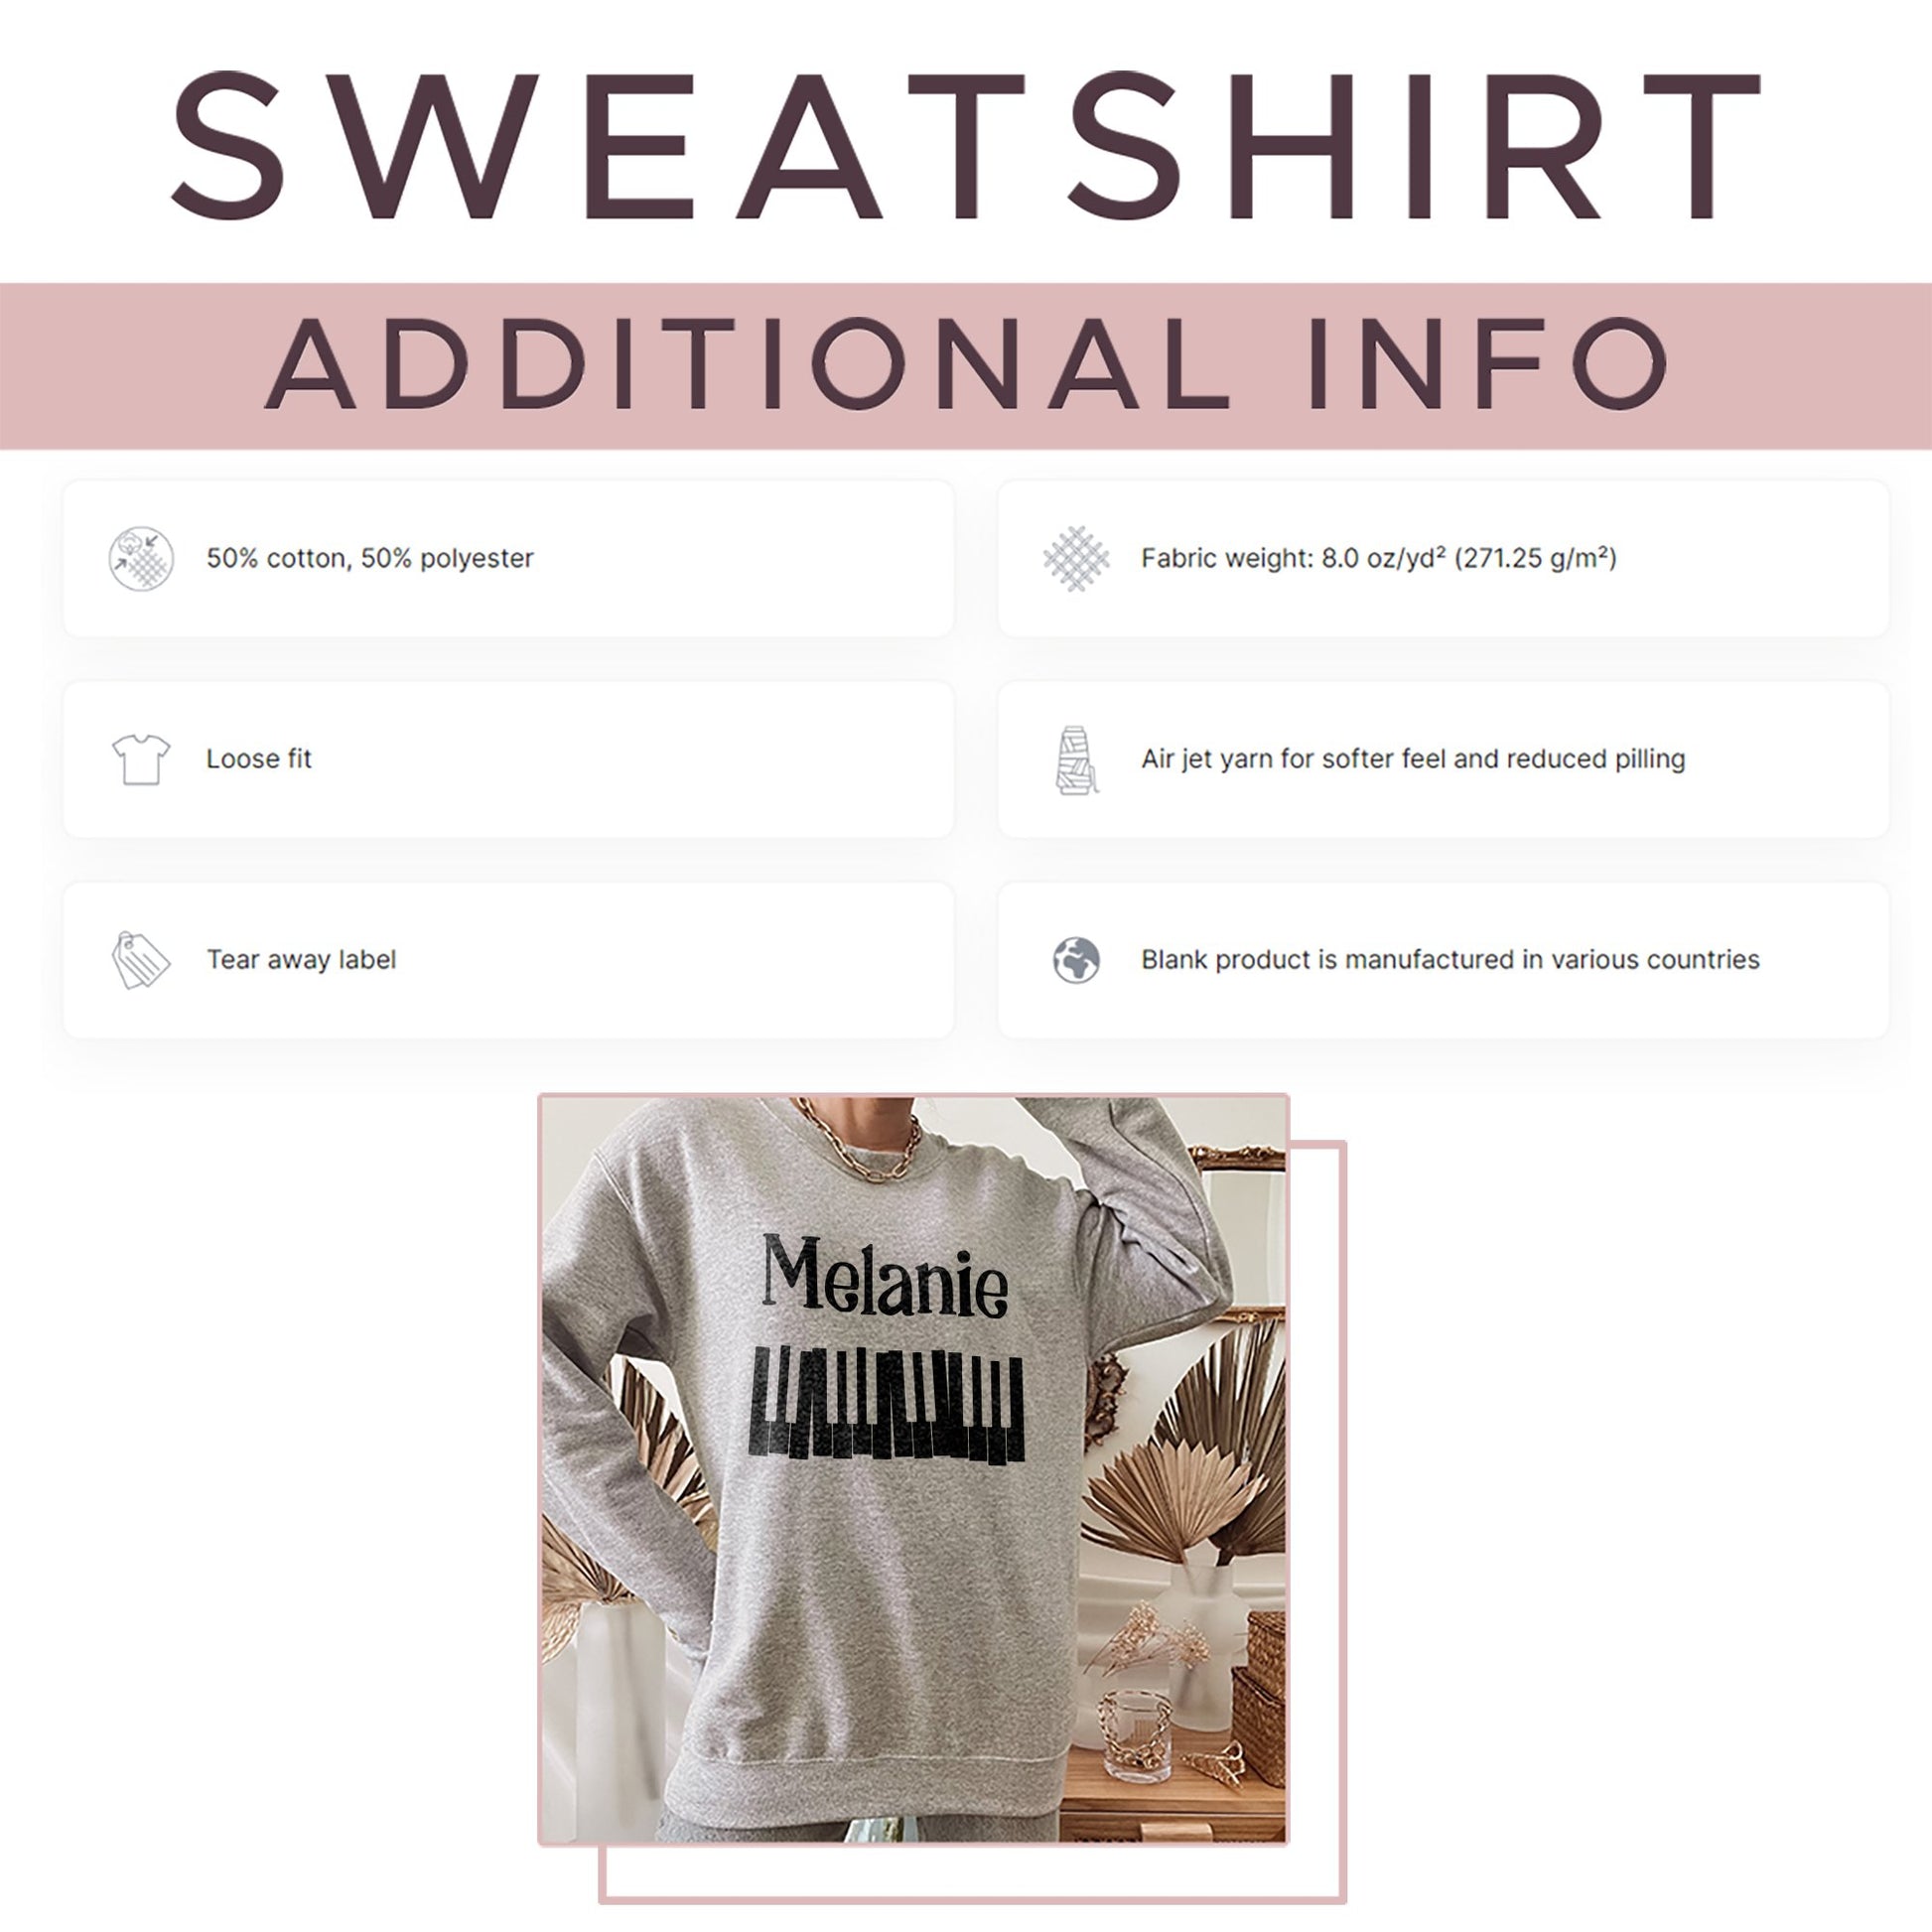 Custom Name Music Sweatshirt, Personalized Piano T-Shirt, Piano Lesson Music Gifts, Music Birthday, Gift Music Teacher - Mardonyx Sweatshirt